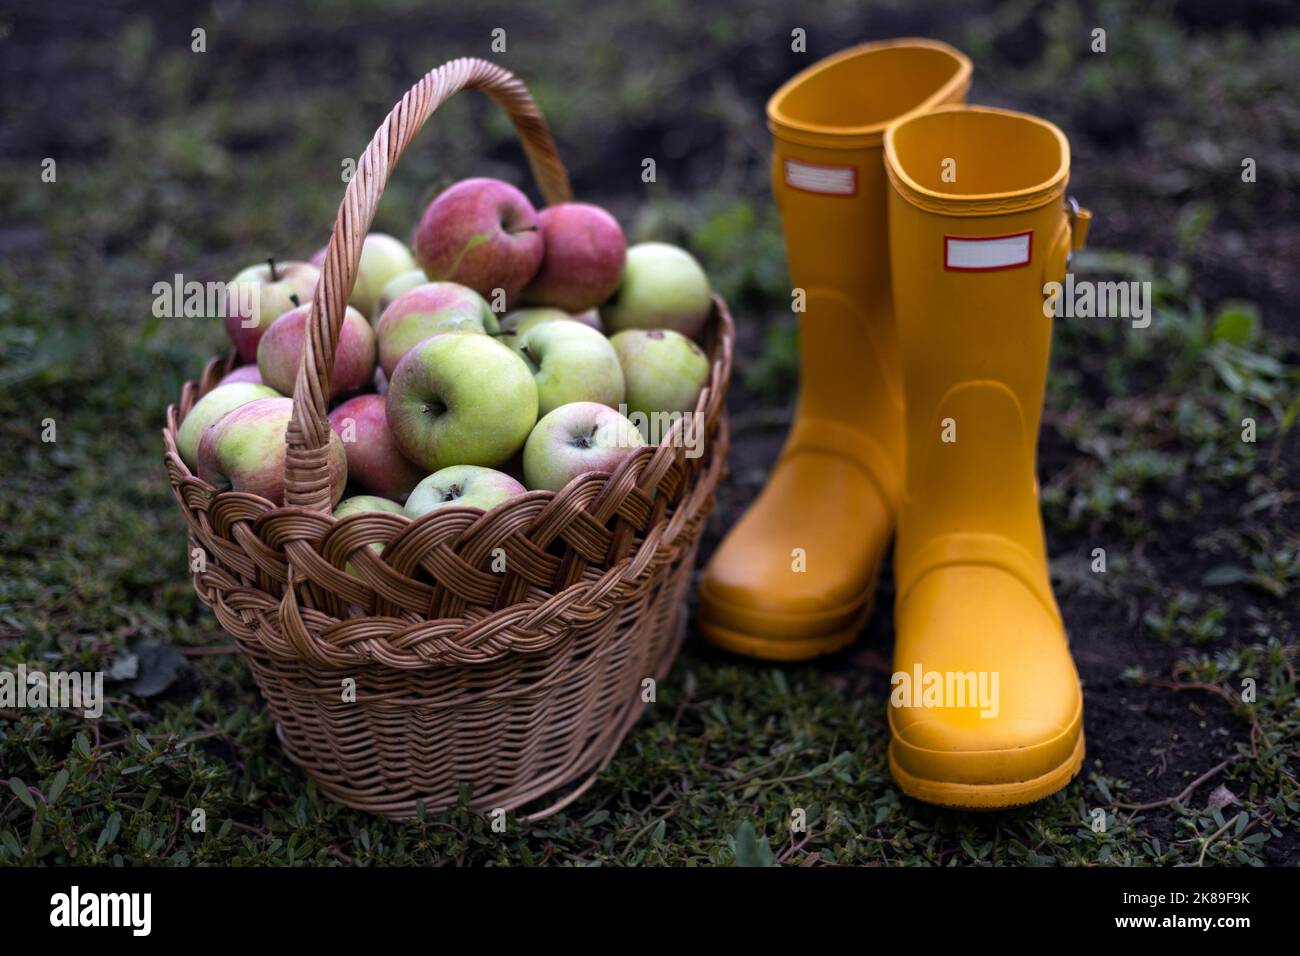 récolte de pommes et esthétique rurale. panier de pommes et bottes en caoutchouc jaune Banque D'Images